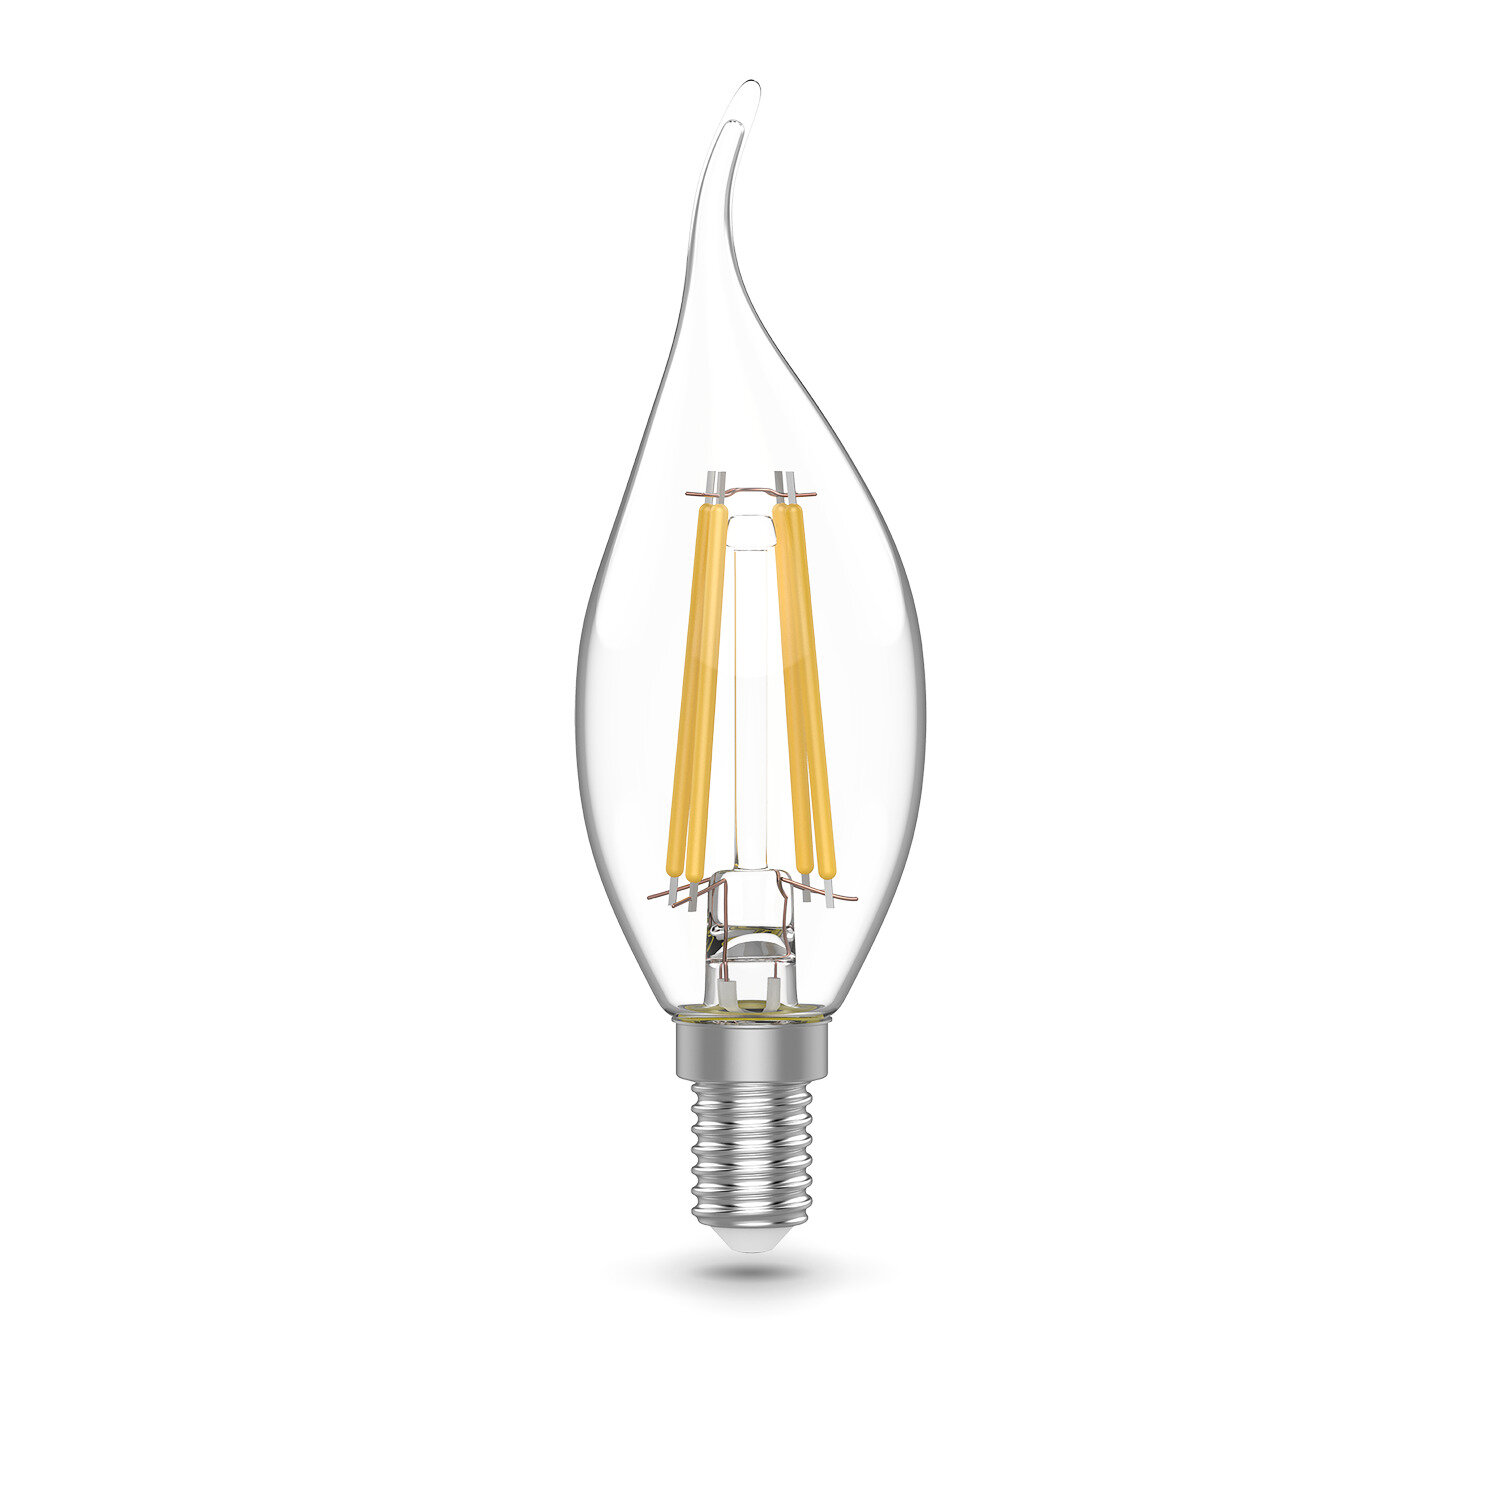 Лампа светодиодная Gauss E14 170-240 В 5.5 Вт свеча на ветру тонированная 510 лм теплый белый свет, 3 шт. - фото №9